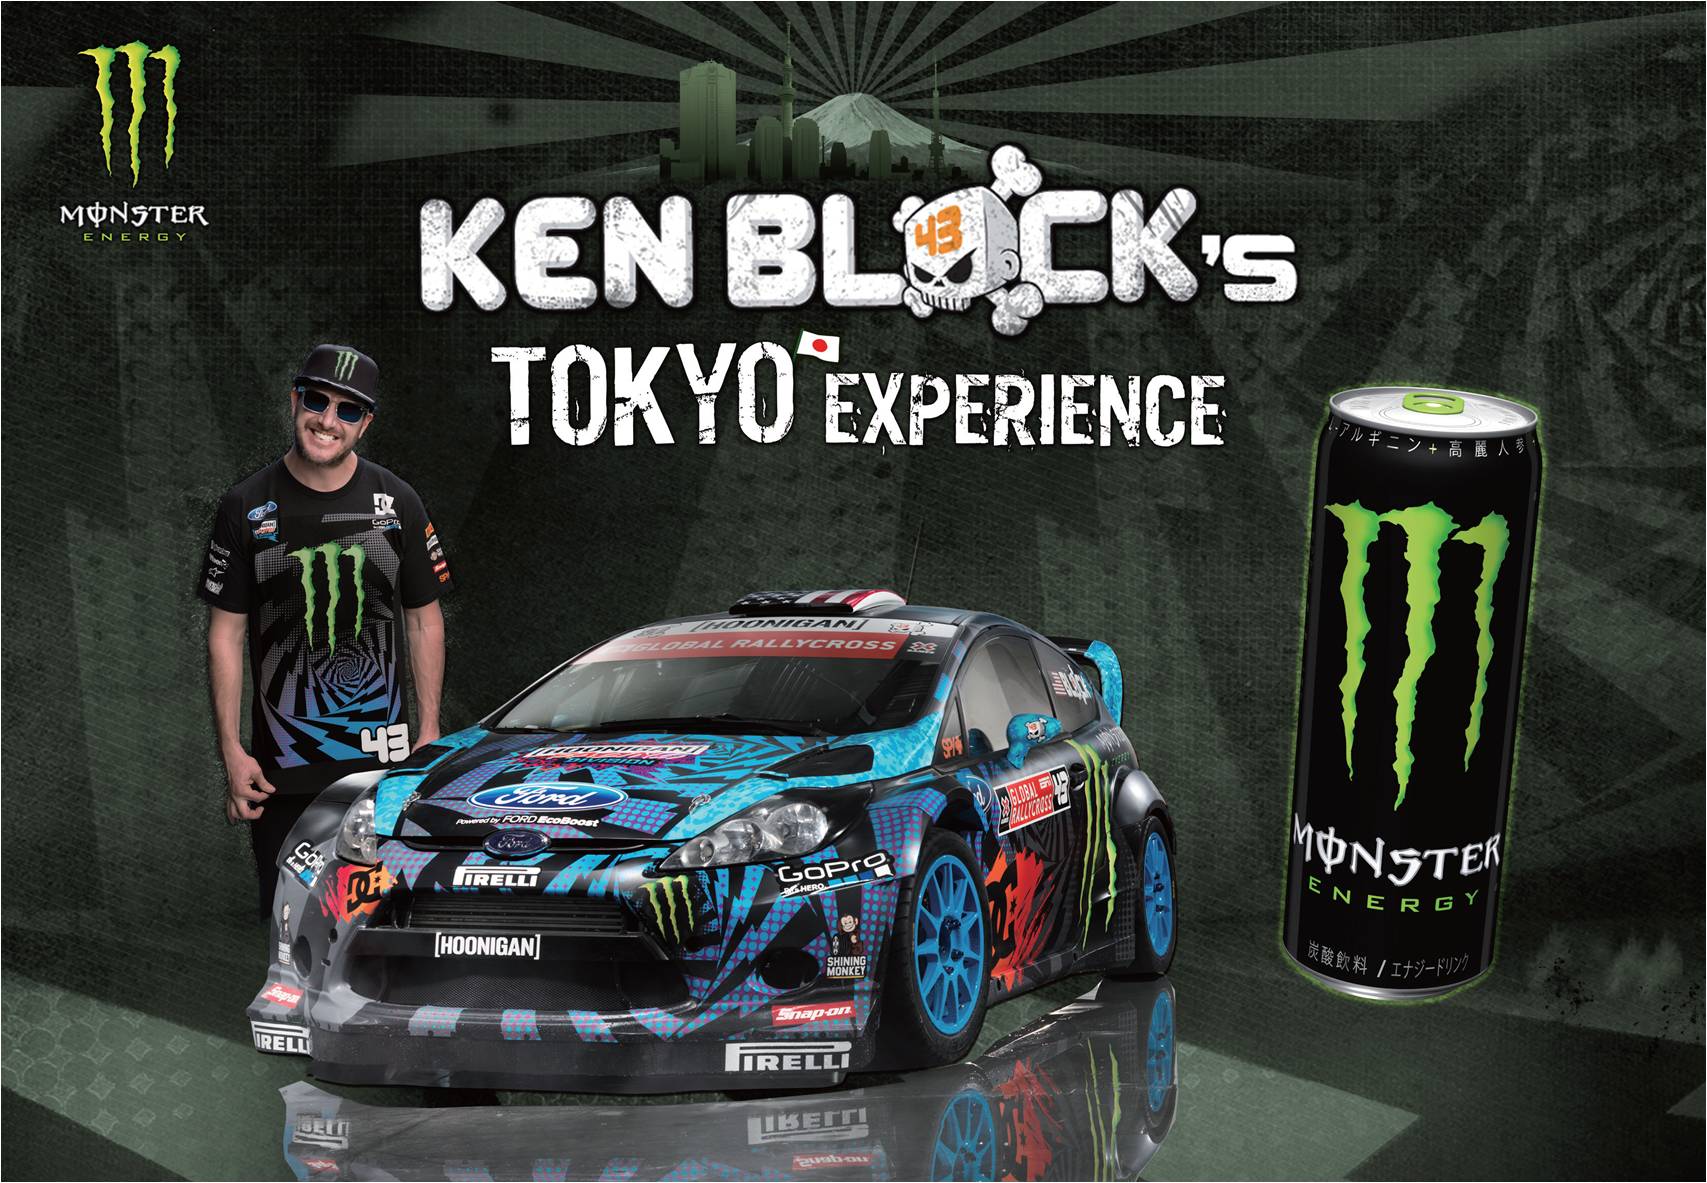 ケン ブロックが遂に日本に初上陸 お台場にモンスターエナジー仕様で入場フリーの特設サーキットが出現 Ken Block S Tokyo Experience 開催 モンスターエナジージャパン合同会社のプレスリリース